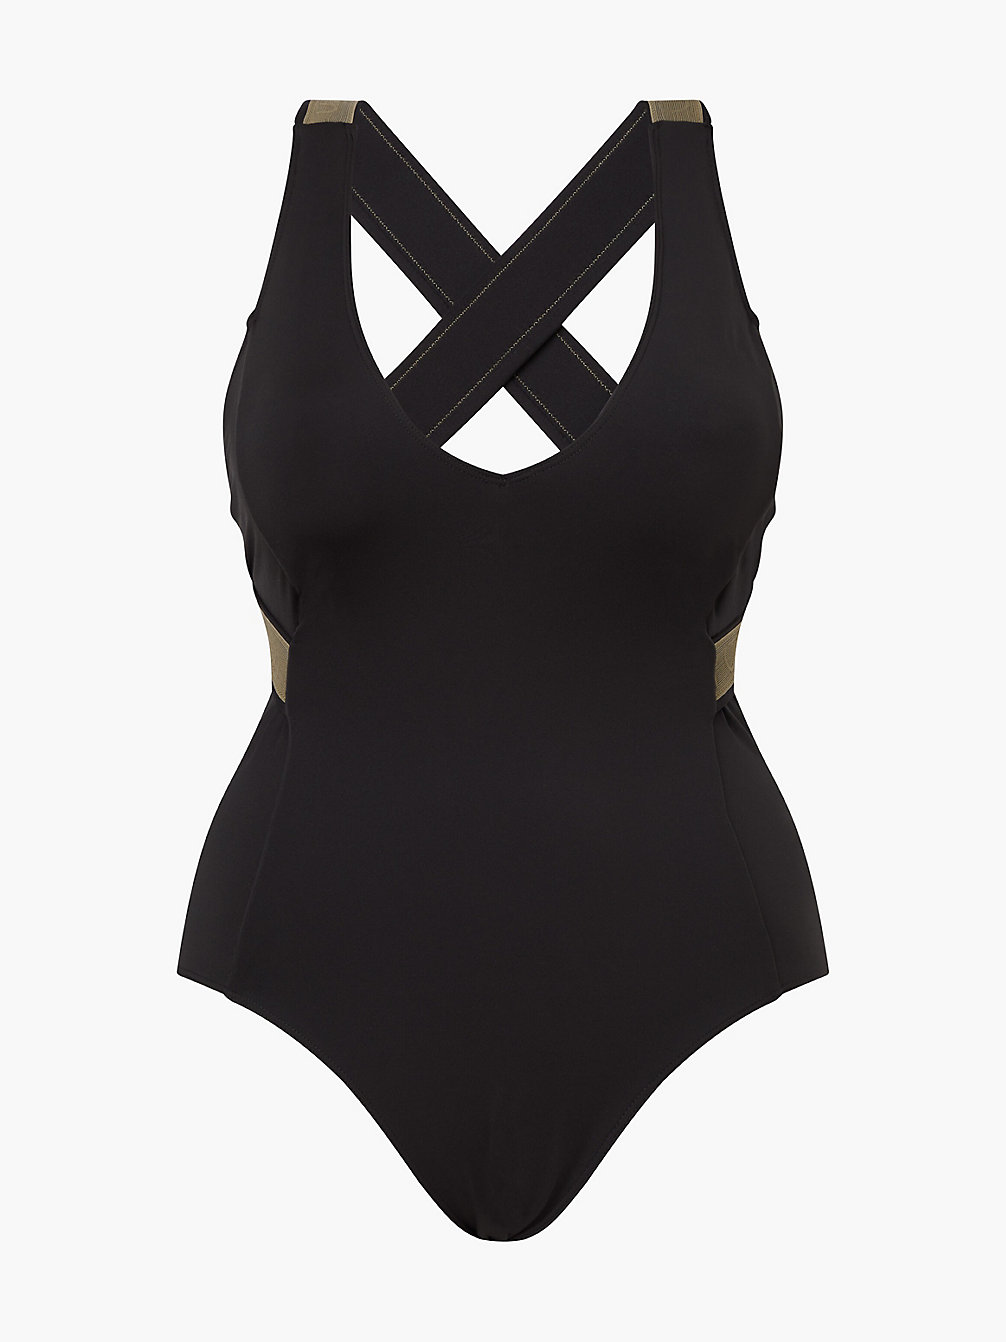 PVH BLACK Plus Size Swimsuit - CK Curve undefined women Calvin Klein